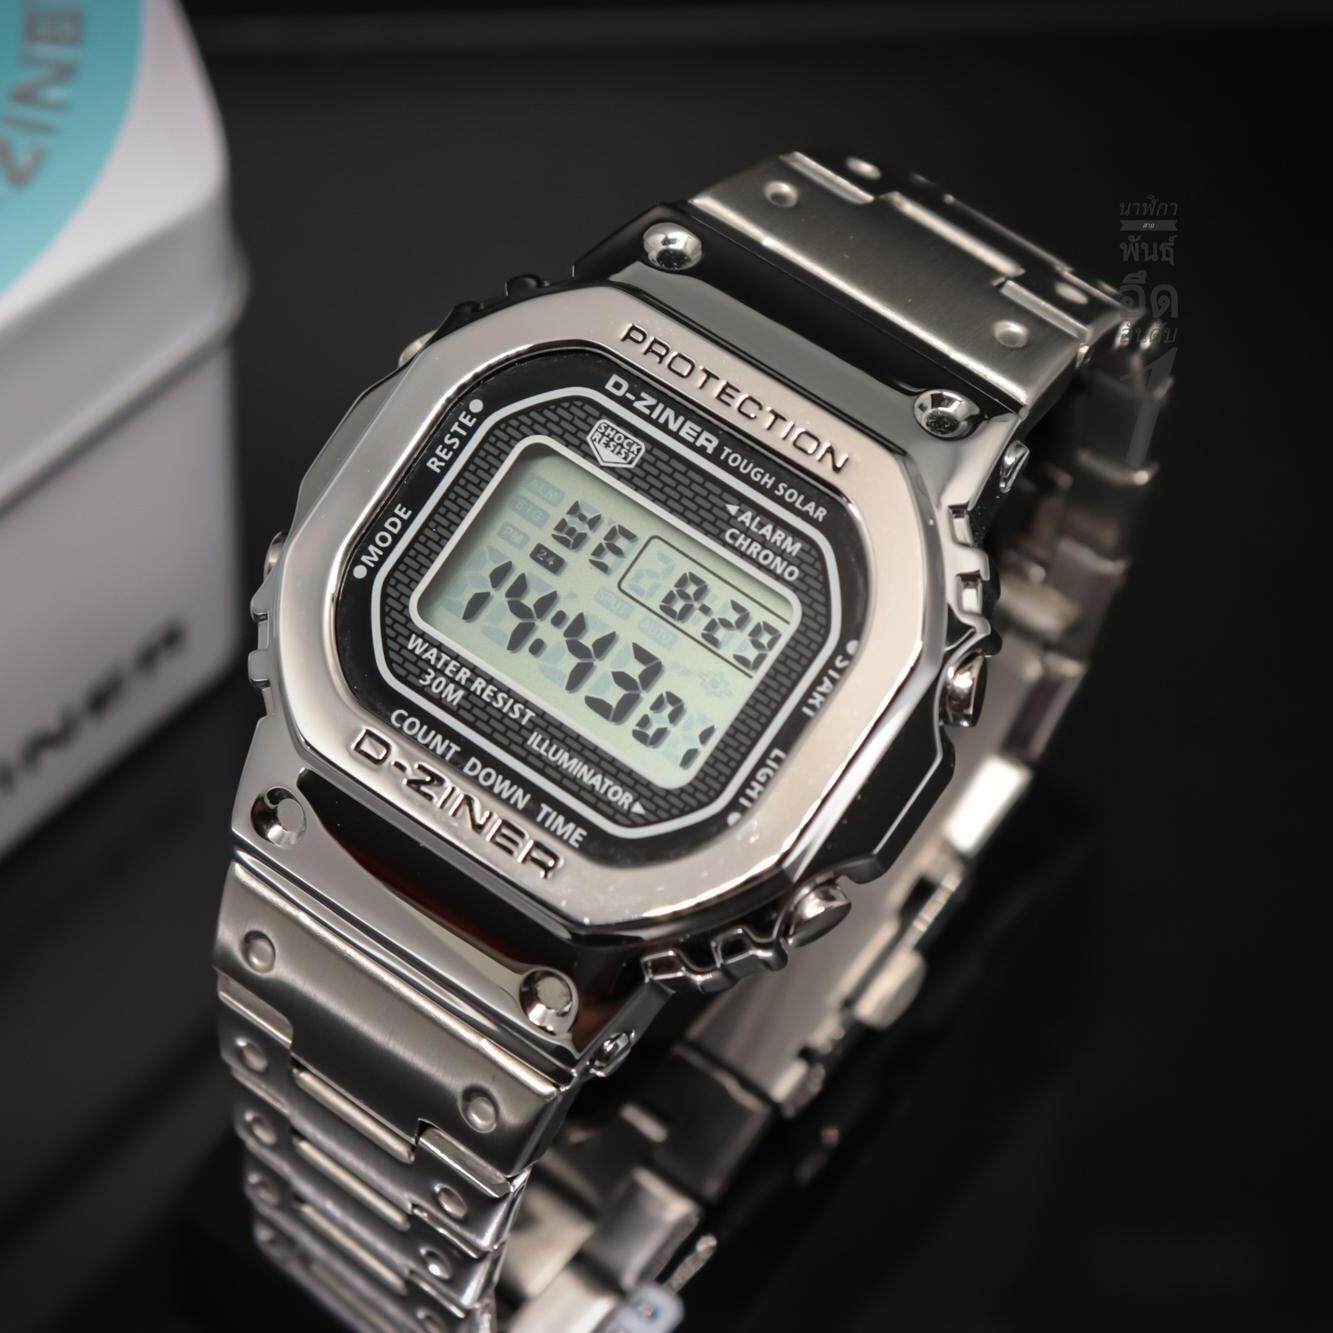 นาฬิกา D Ziner รุ่นใหม่ล่าสุด สไตล์ G shock สุดฮิต ที่กำลังนิยมในขณะนี้ ( สีเงิน) สินค้าของแท้ 100%